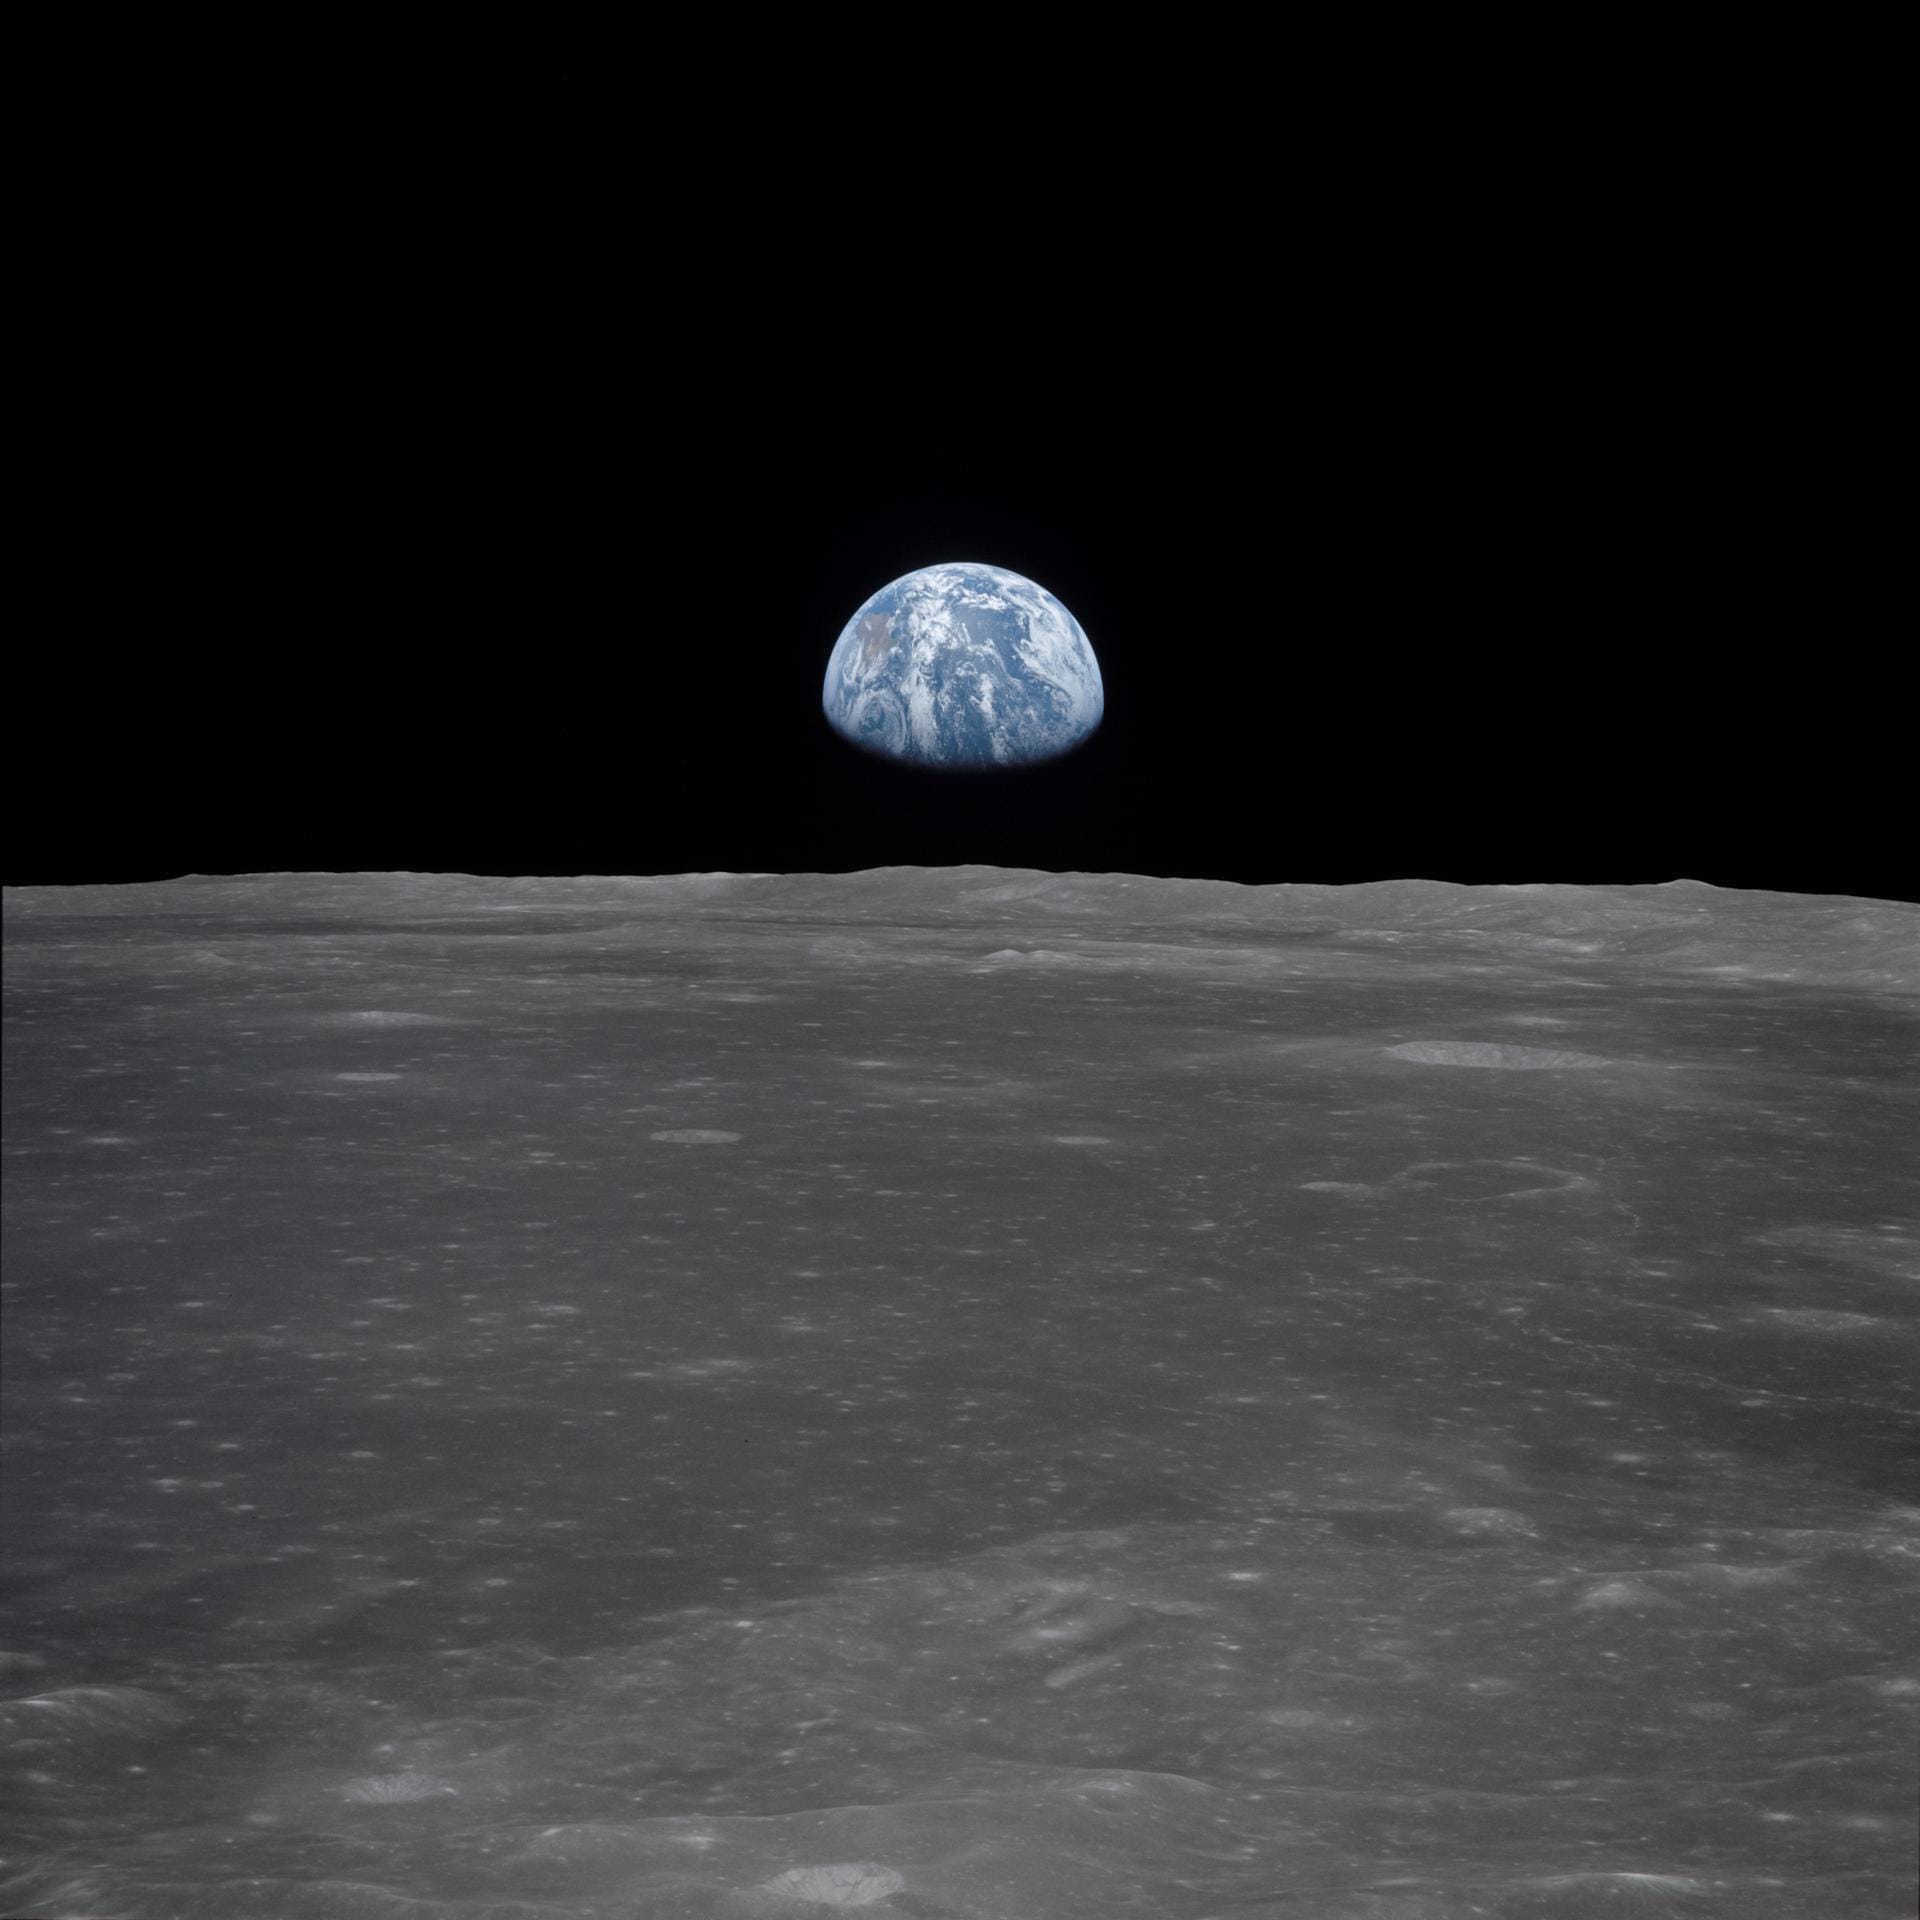 Während Armstrong und Aldrin den Mond zu Fuß erkundeten, blieb Michael Collins in der Mondfähre zurück. Von dort nahm er dieses Bild auf, das zeigt, wie die Erde über dem Horizont des Mondes aufsteigt.